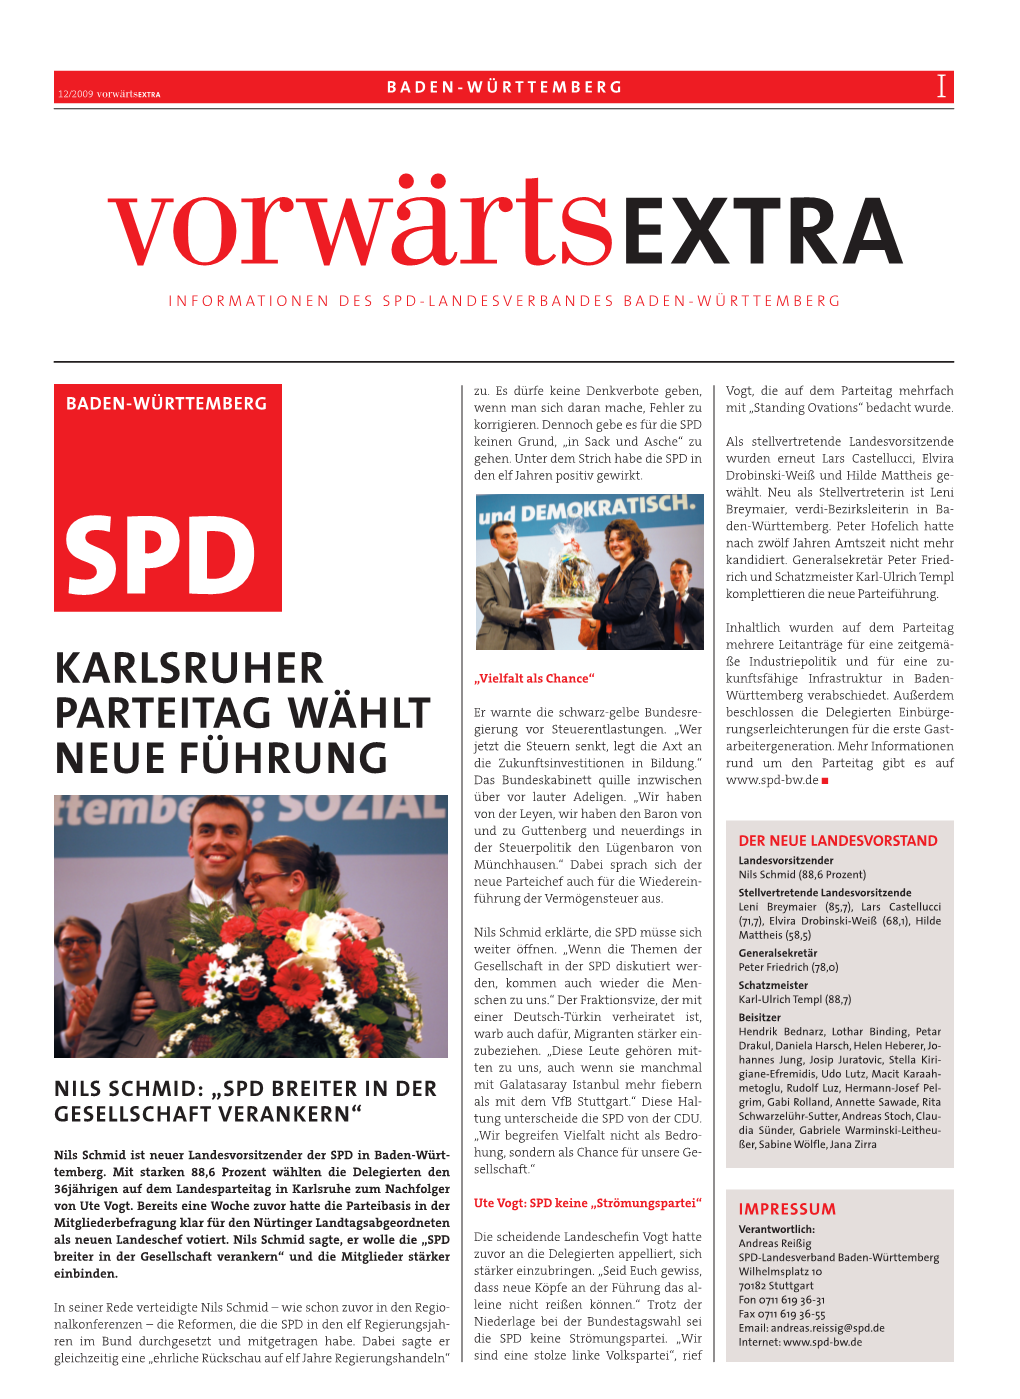 Karlsruher Parteitag Wählt Neue Führung